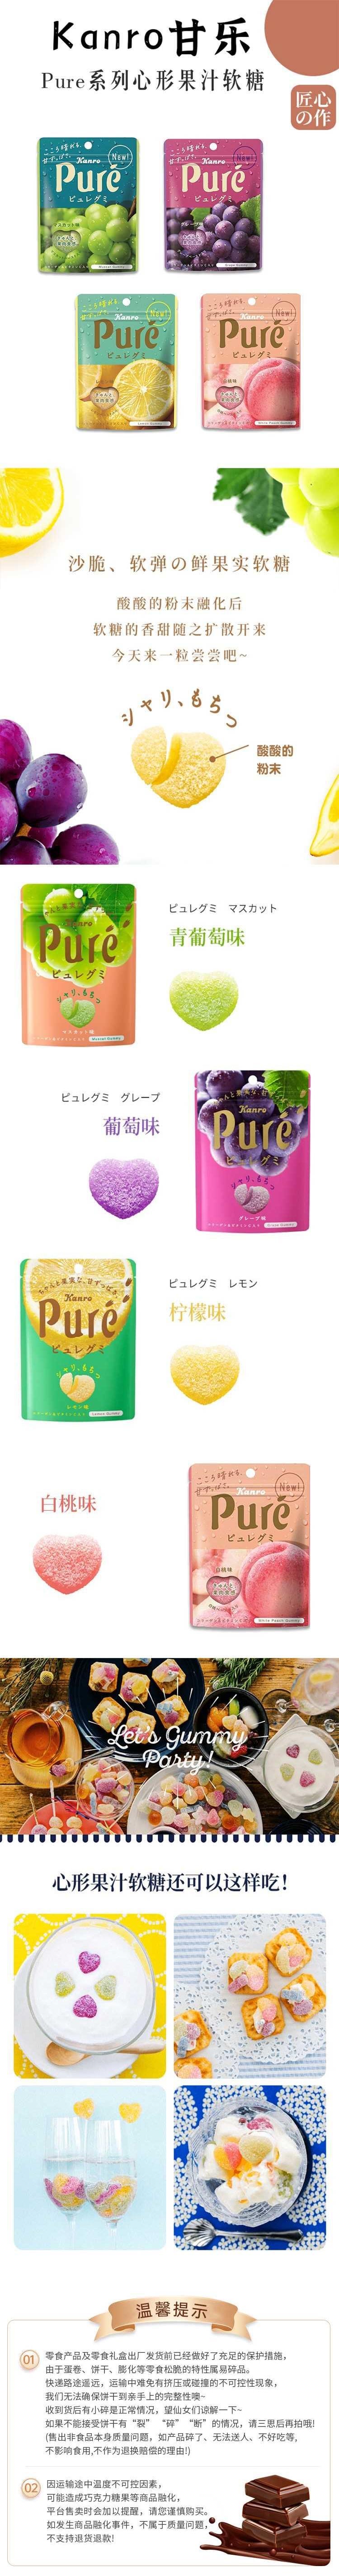 【日本直邮】KANRO甘乐 Pure果肉果汁软糖 56g 葡萄味